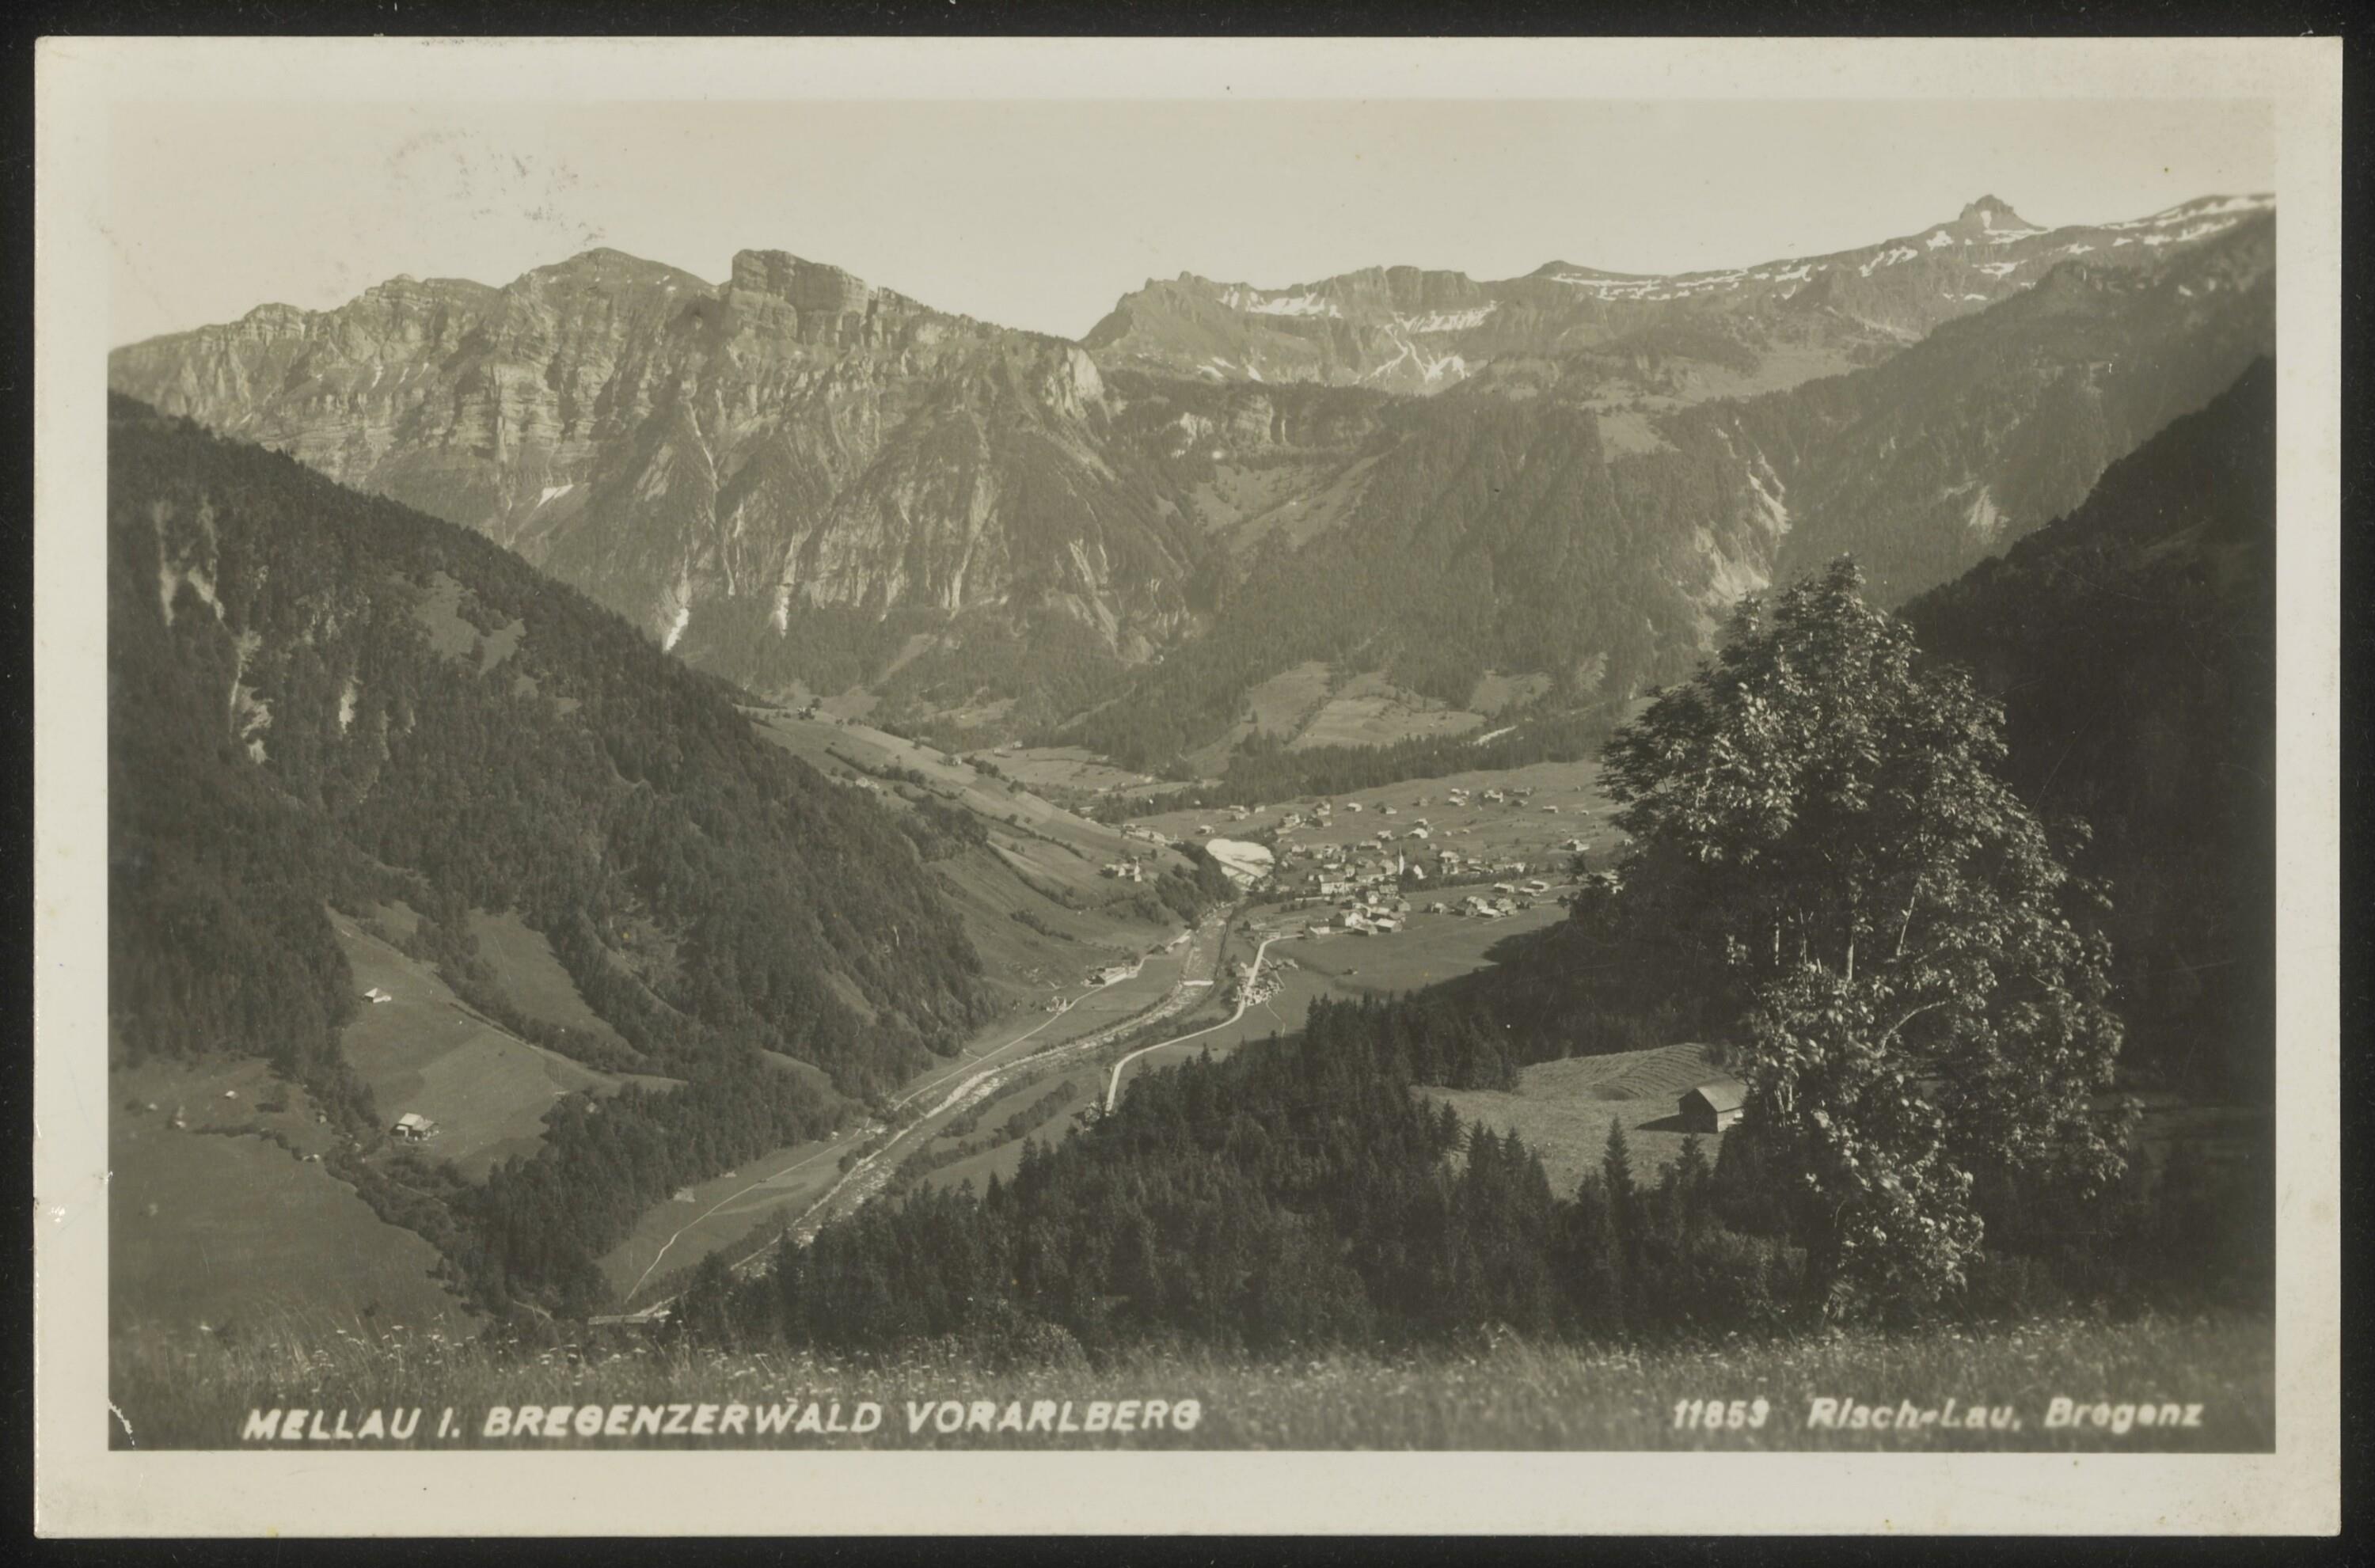 Mellau i. Bregenzerwald Vorarlberg></div>


    <hr>
    <div class=